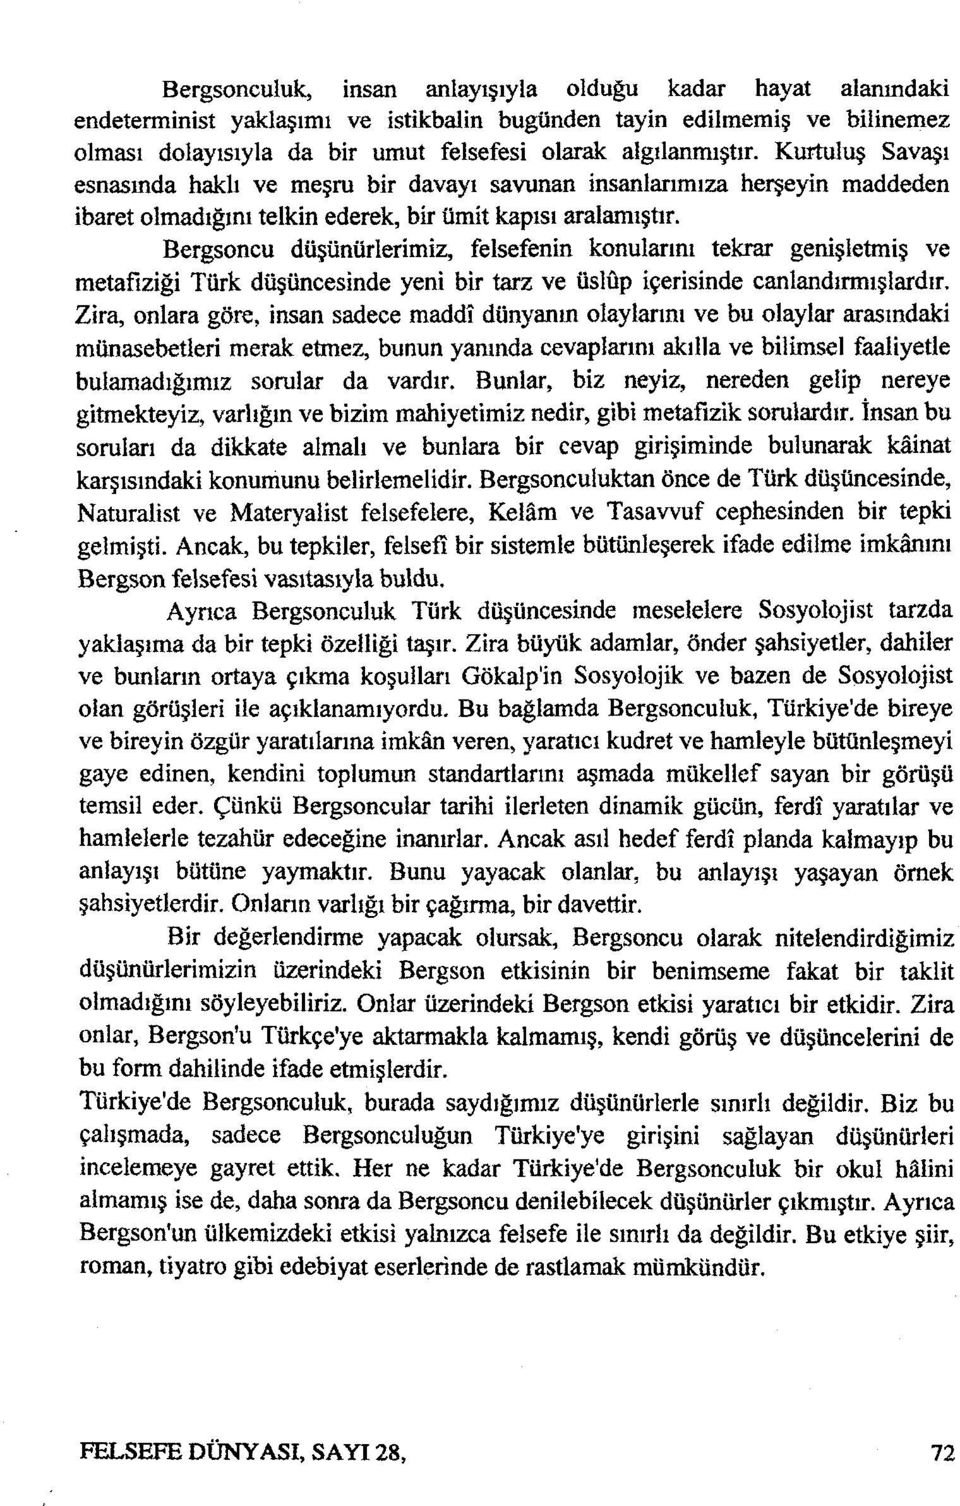 Bergsoncu düşünürlerimiz, felsefenin konularını tekrar genişletmiş ve metafiziği Türk düşüncesinde yeni bir tarz ve üslûp içerisinde canlandırmışlardır.